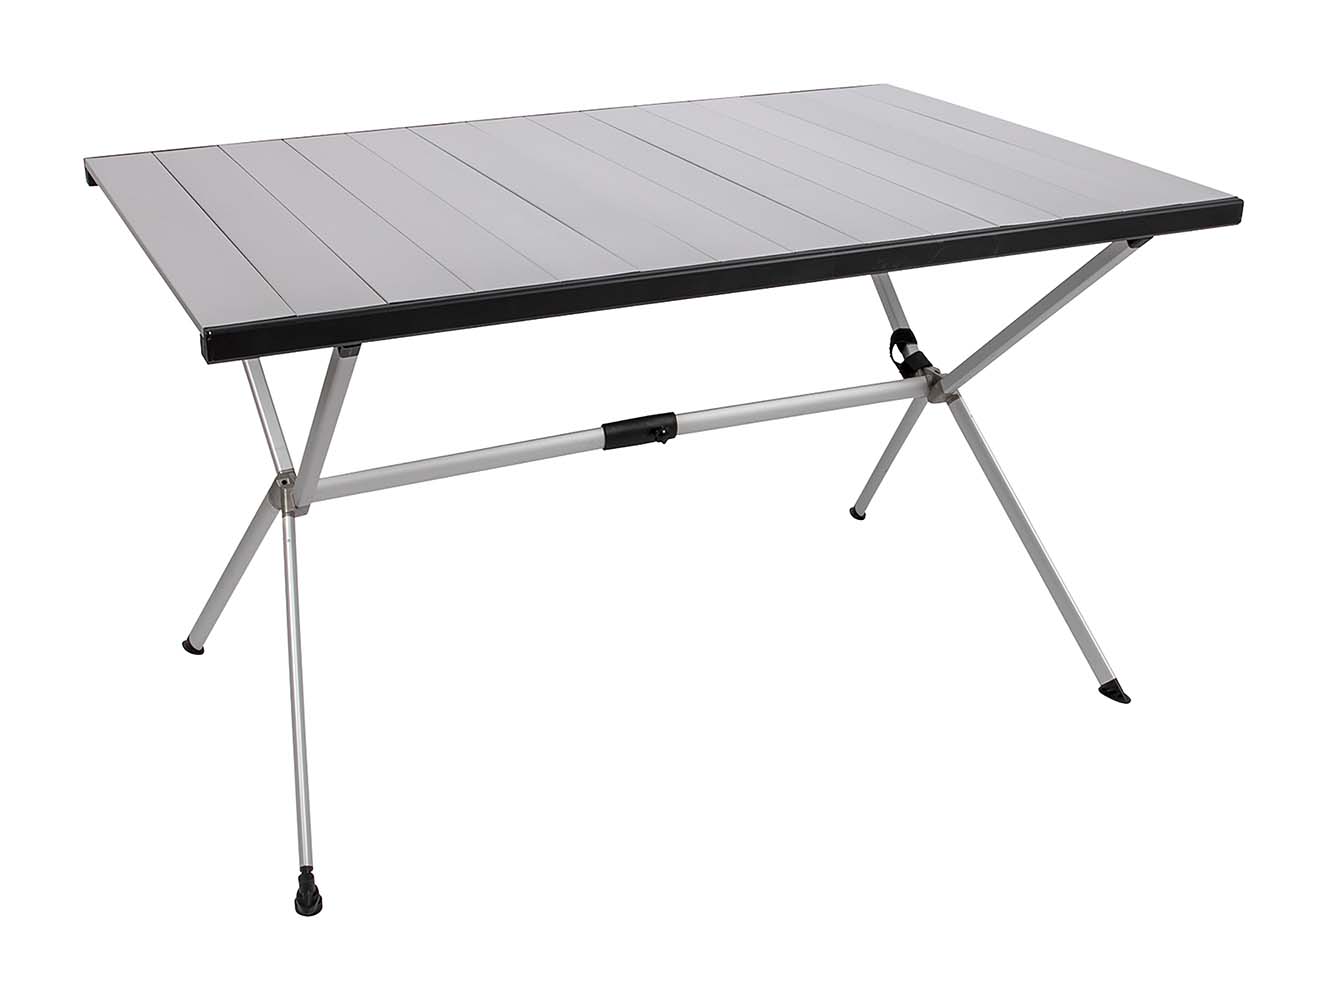 1404438 Una mesa de aluminio con patas cruzadas muy estable. Esta mesa es totalmente plegable y cómoda de transportar. El tablero de la mesa se puede enrollar completamente. También se pueden plegar las patas.